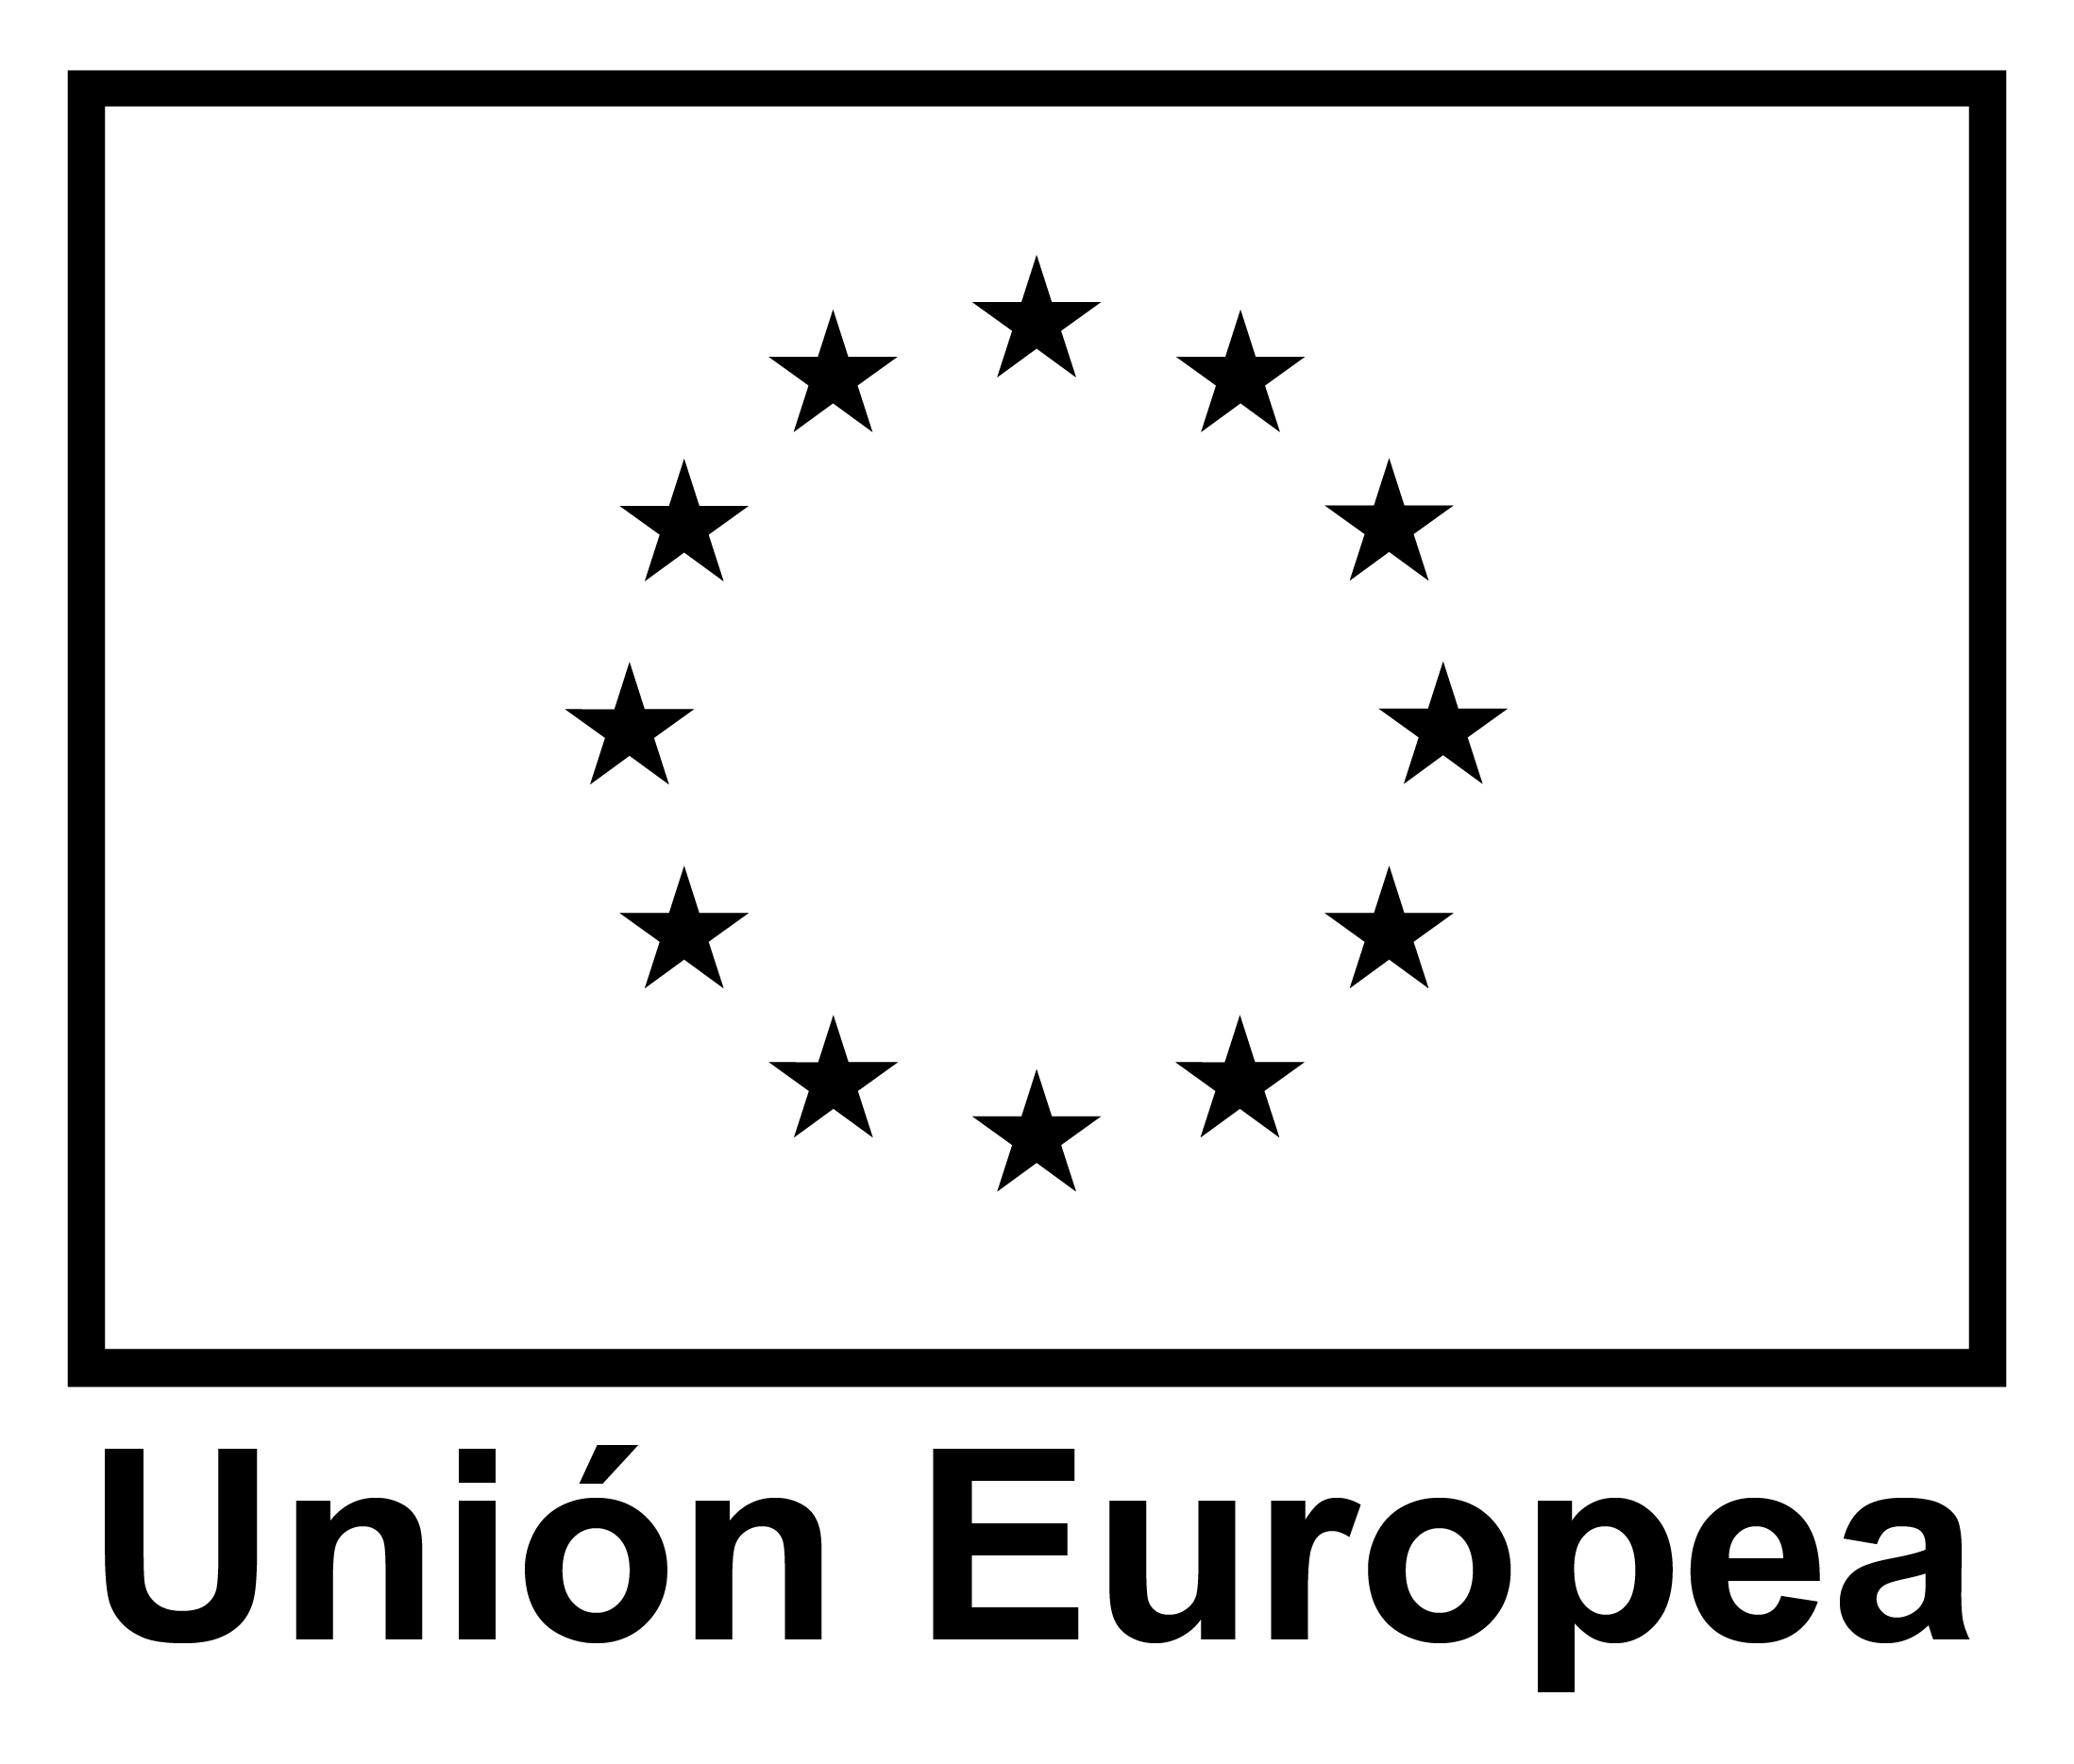 LOGO UNION EUROPEA 01